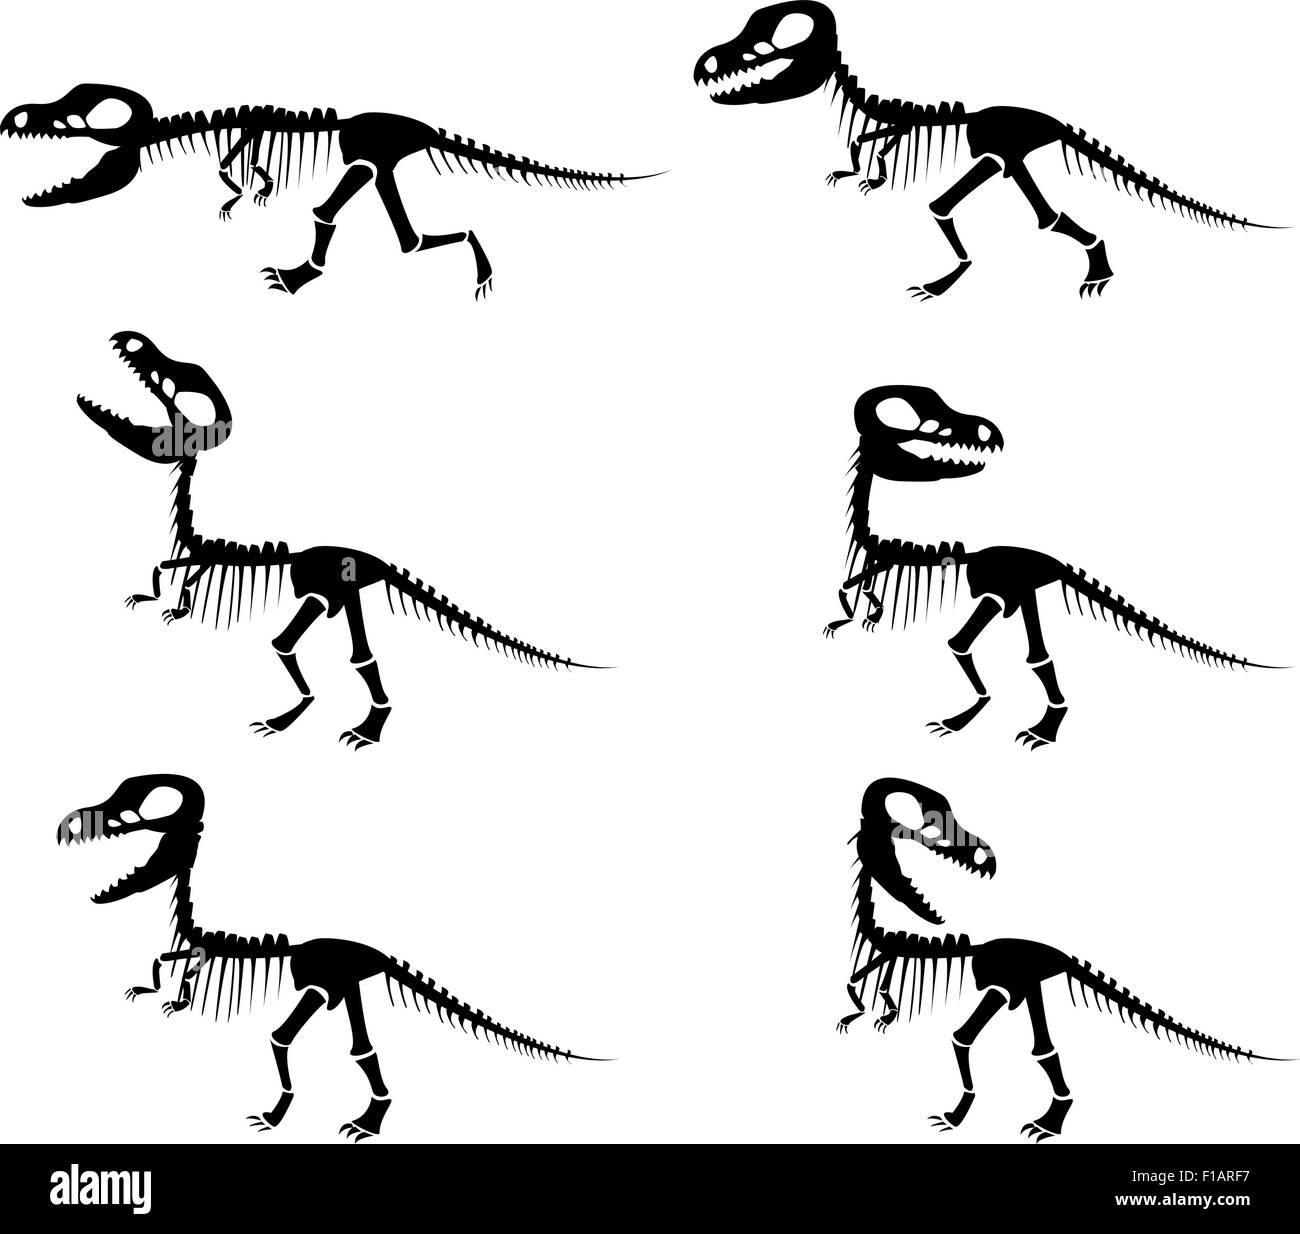 Silhouettes vecteur isolé du squelette d'un dinosaure Tyrannosaurus rex en silhouette style. Illustration de Vecteur